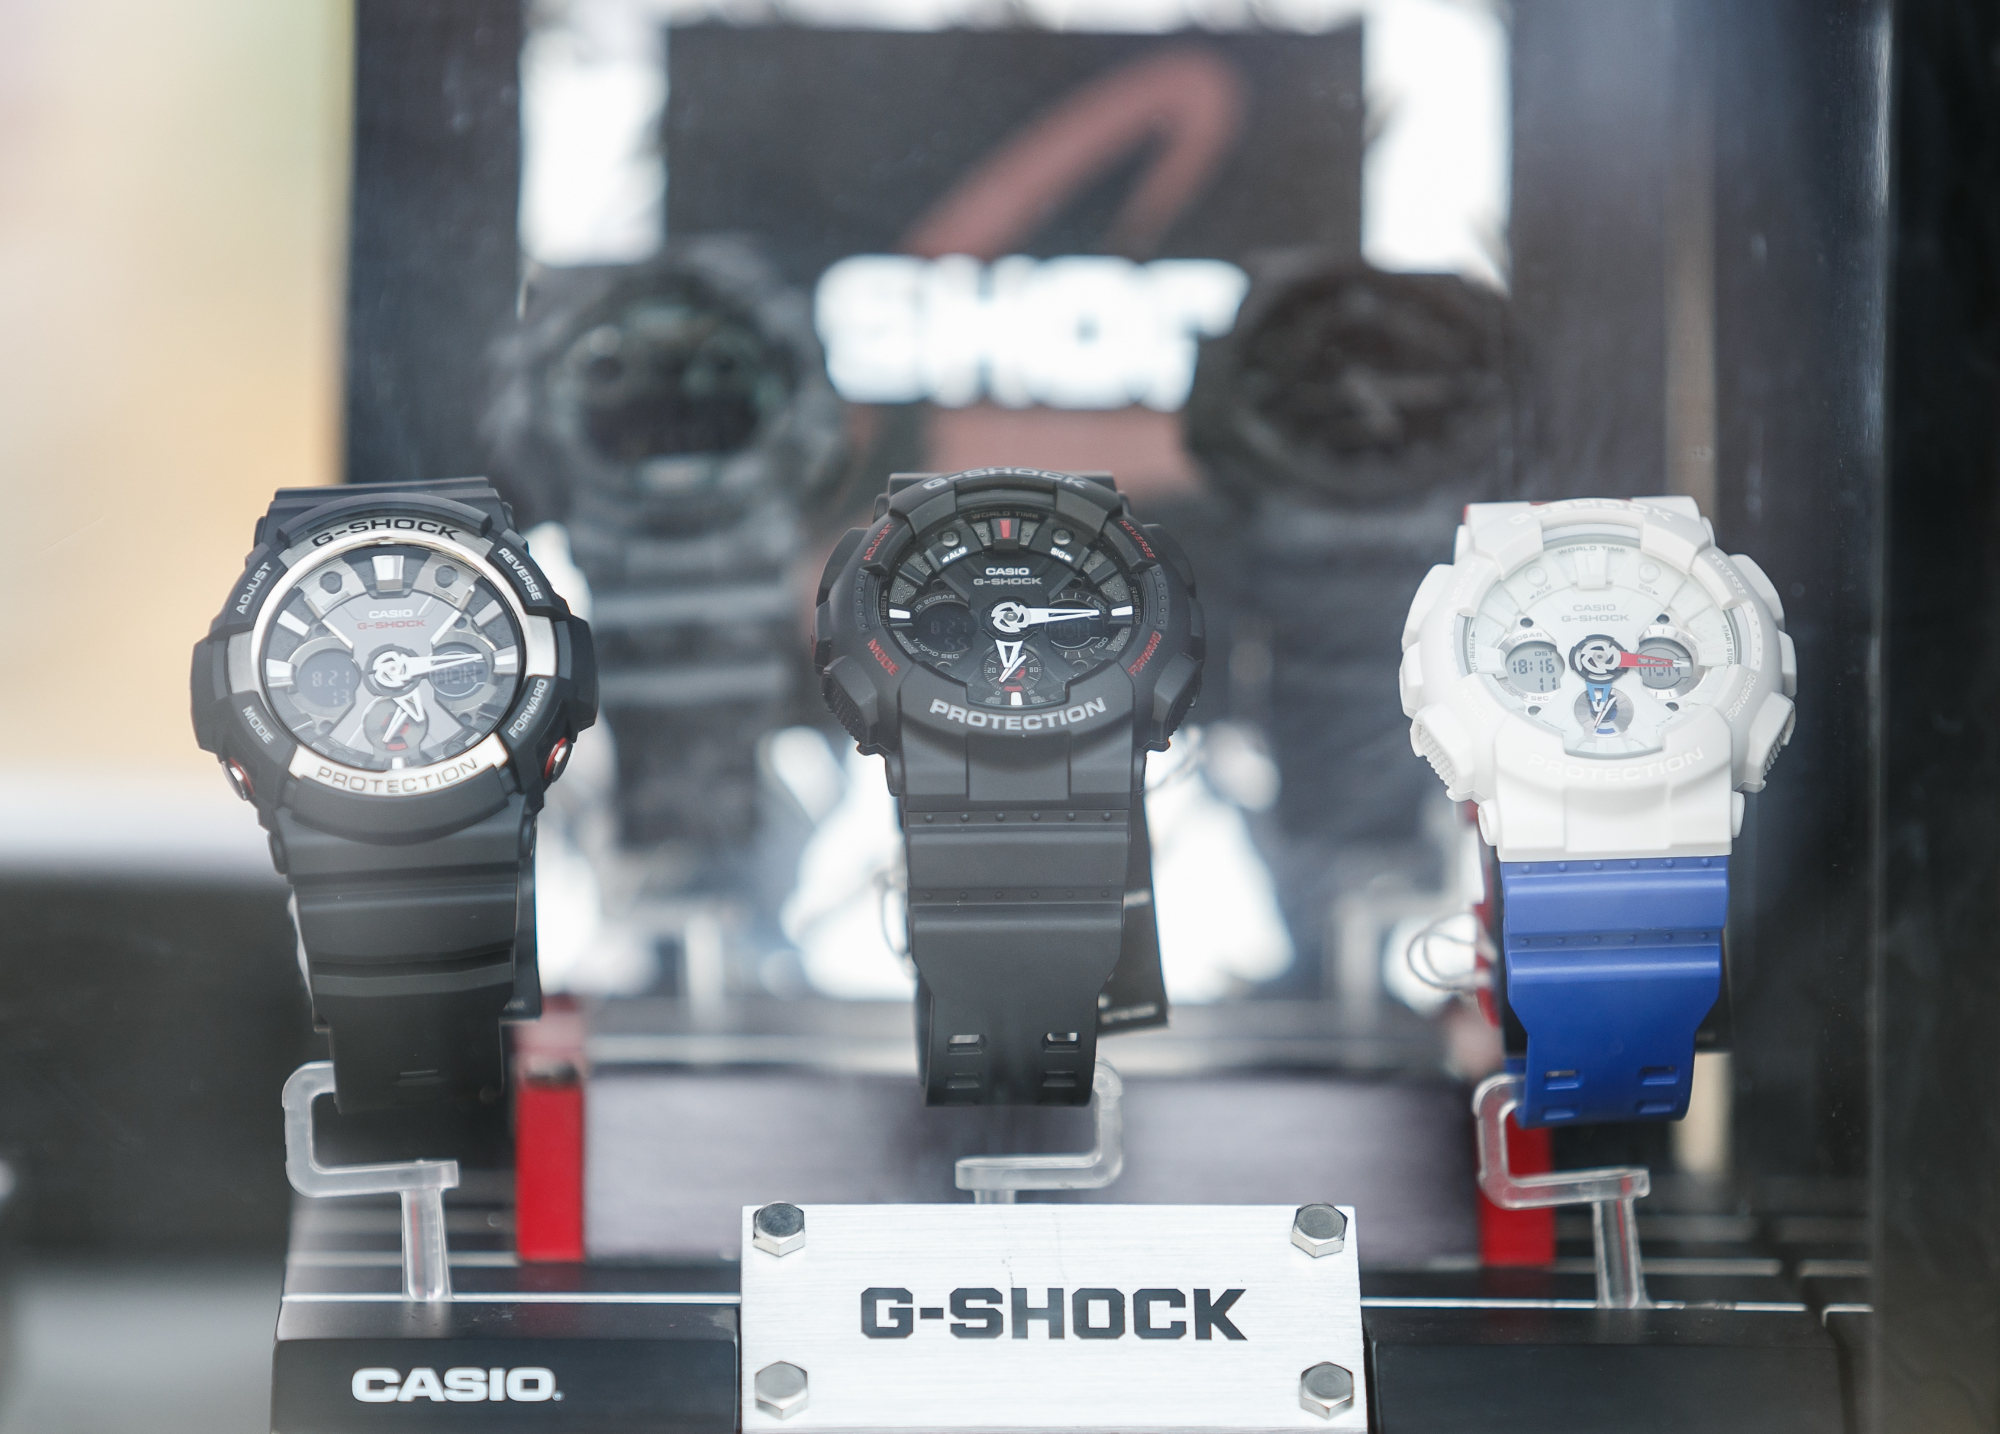 Jeste li znali da Casio proizvodi satove poštujući DOP norme?